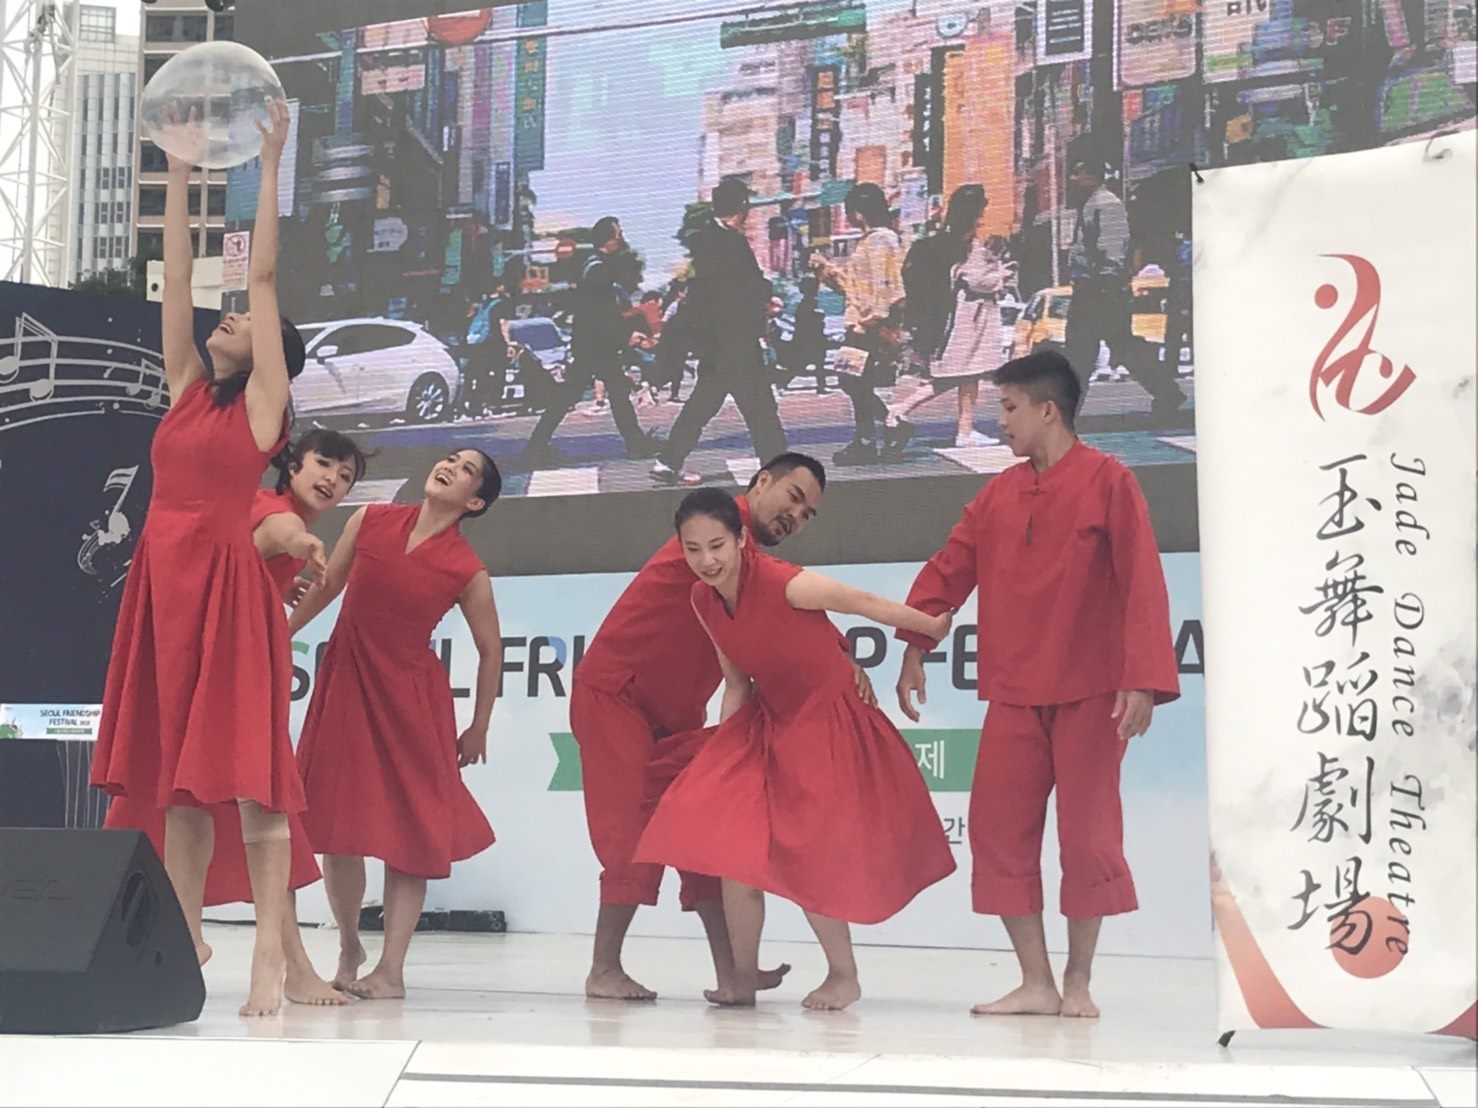 《紅蛋》曾於台灣各地巡演，更前往愛丁堡藝穗節、加拿大台灣文化節等地演出，深受國際好評。「2019首爾友誼節 」再為台北城市外交展現亮眼成果。